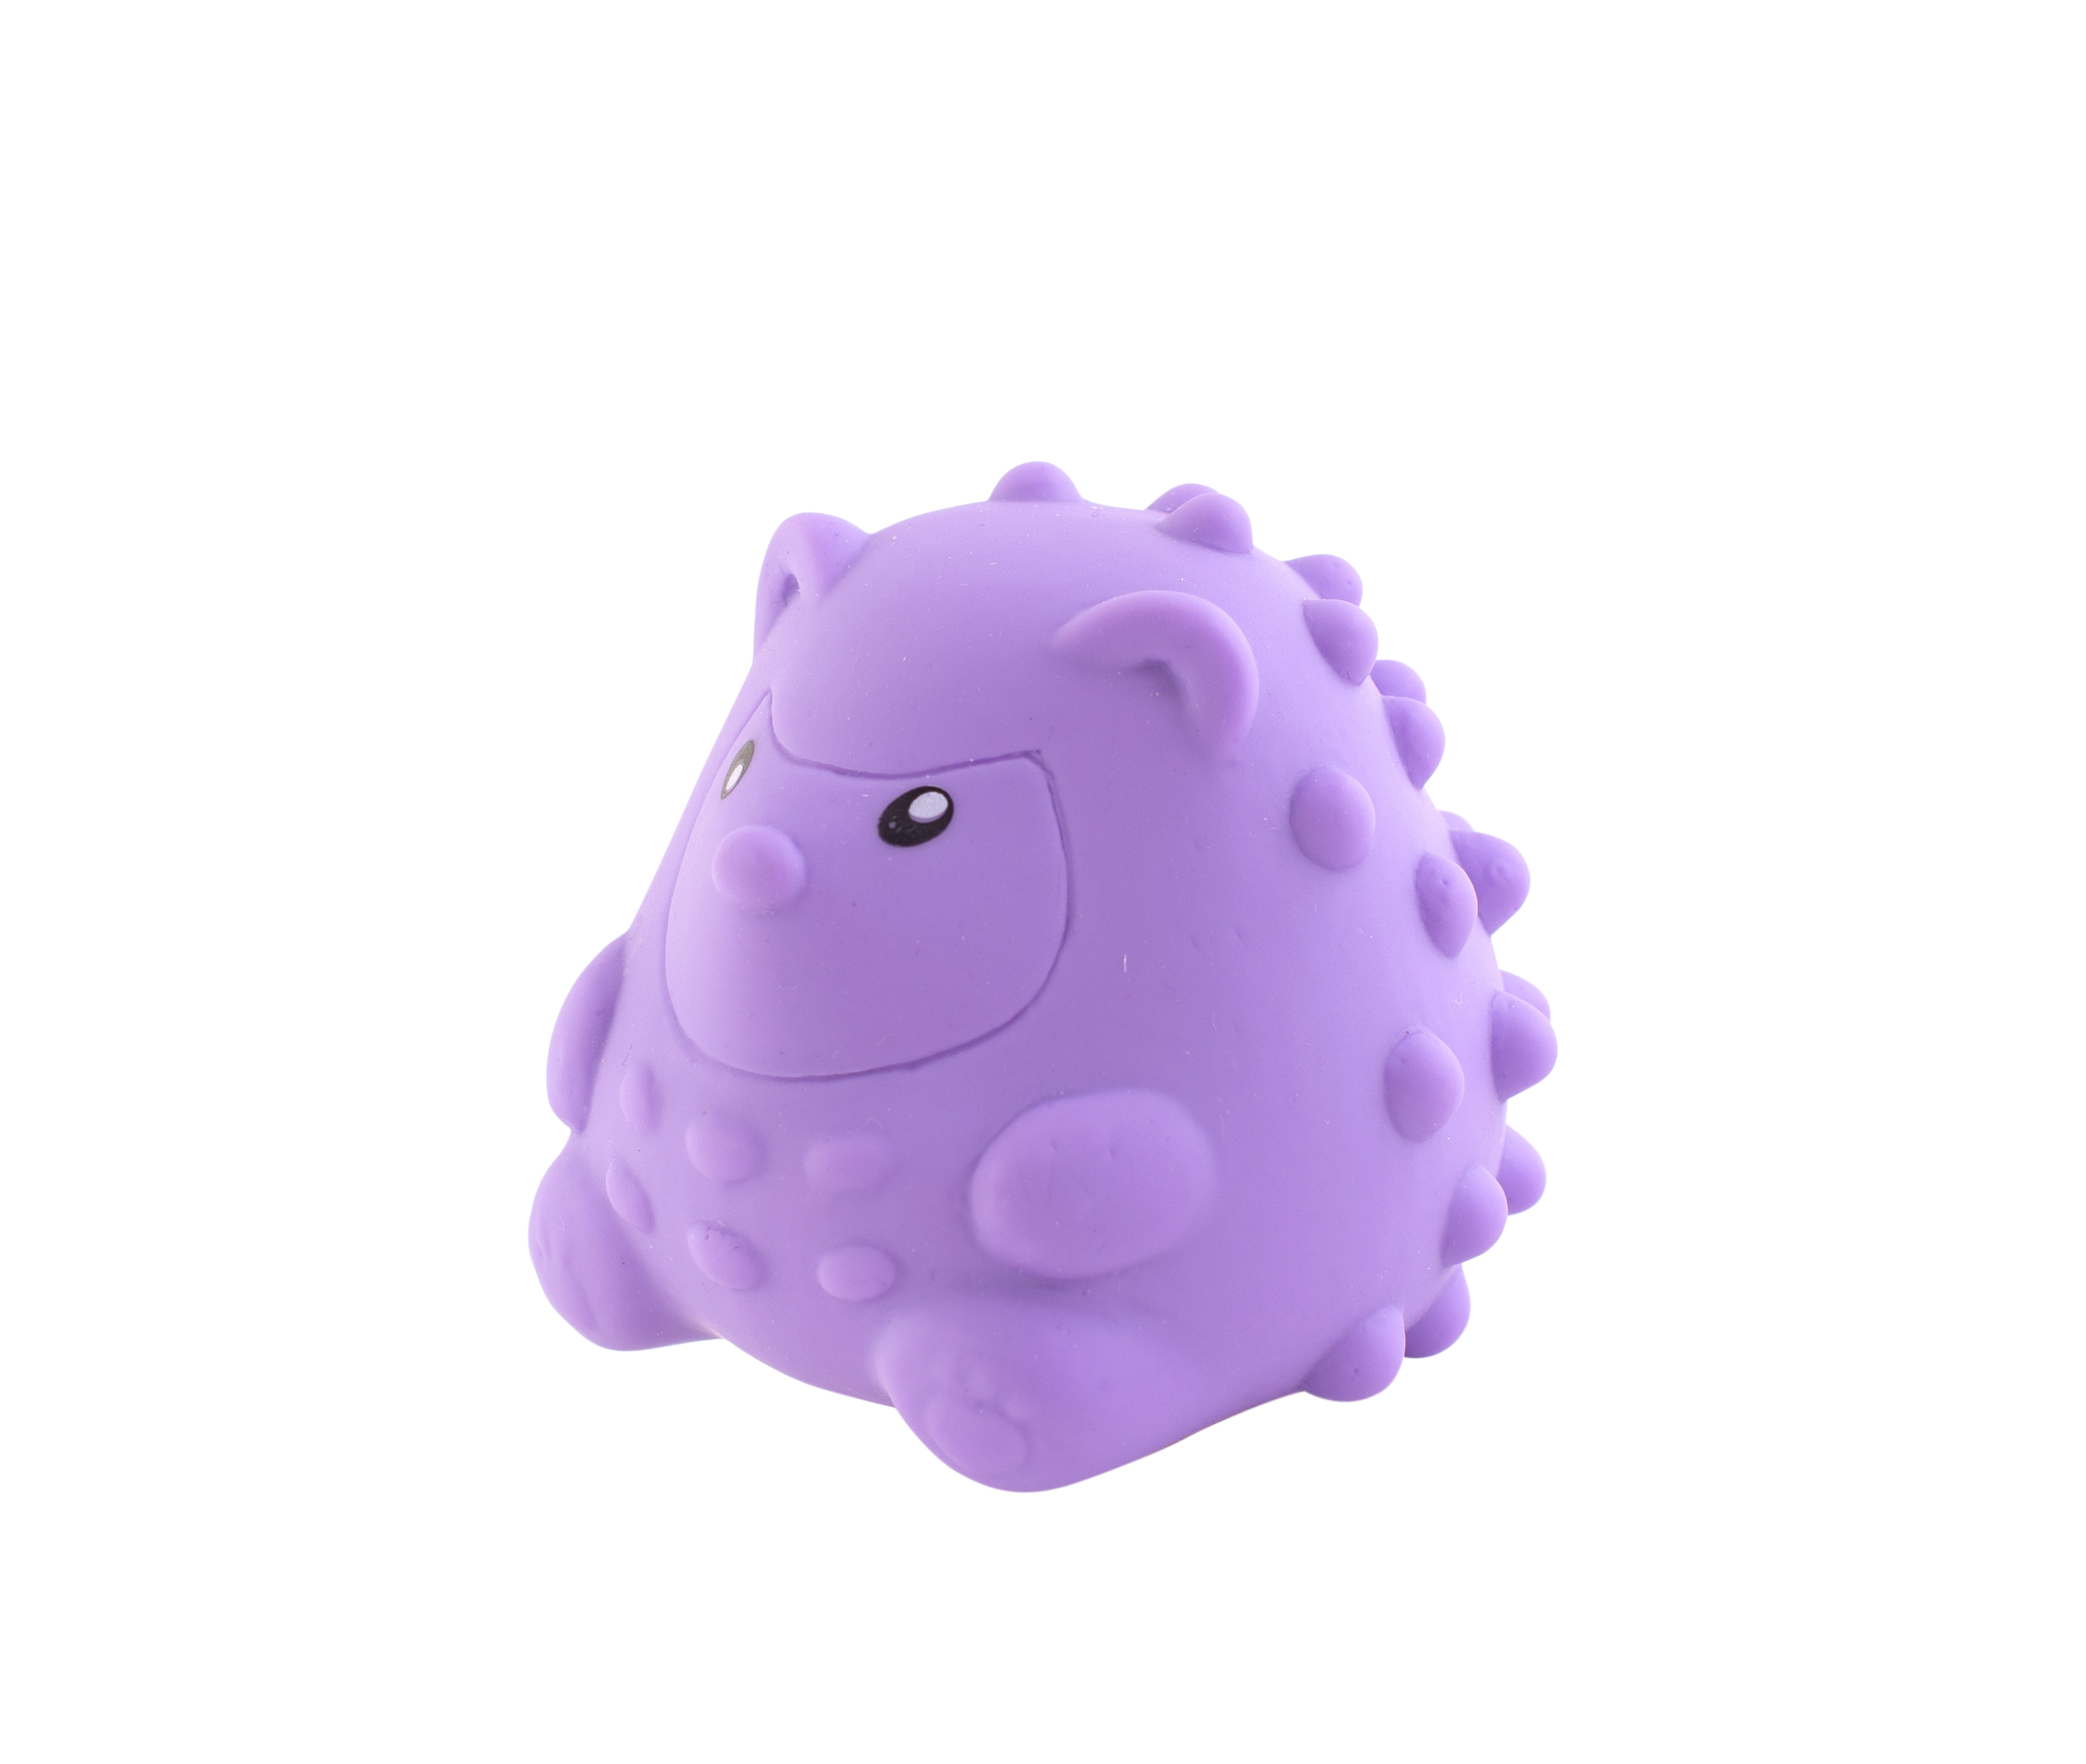 Іграшка для ванної Baby Team Звірятко, зі звуком, фіолетовий (8745_фиолетвоая_зверушка) - фото 2